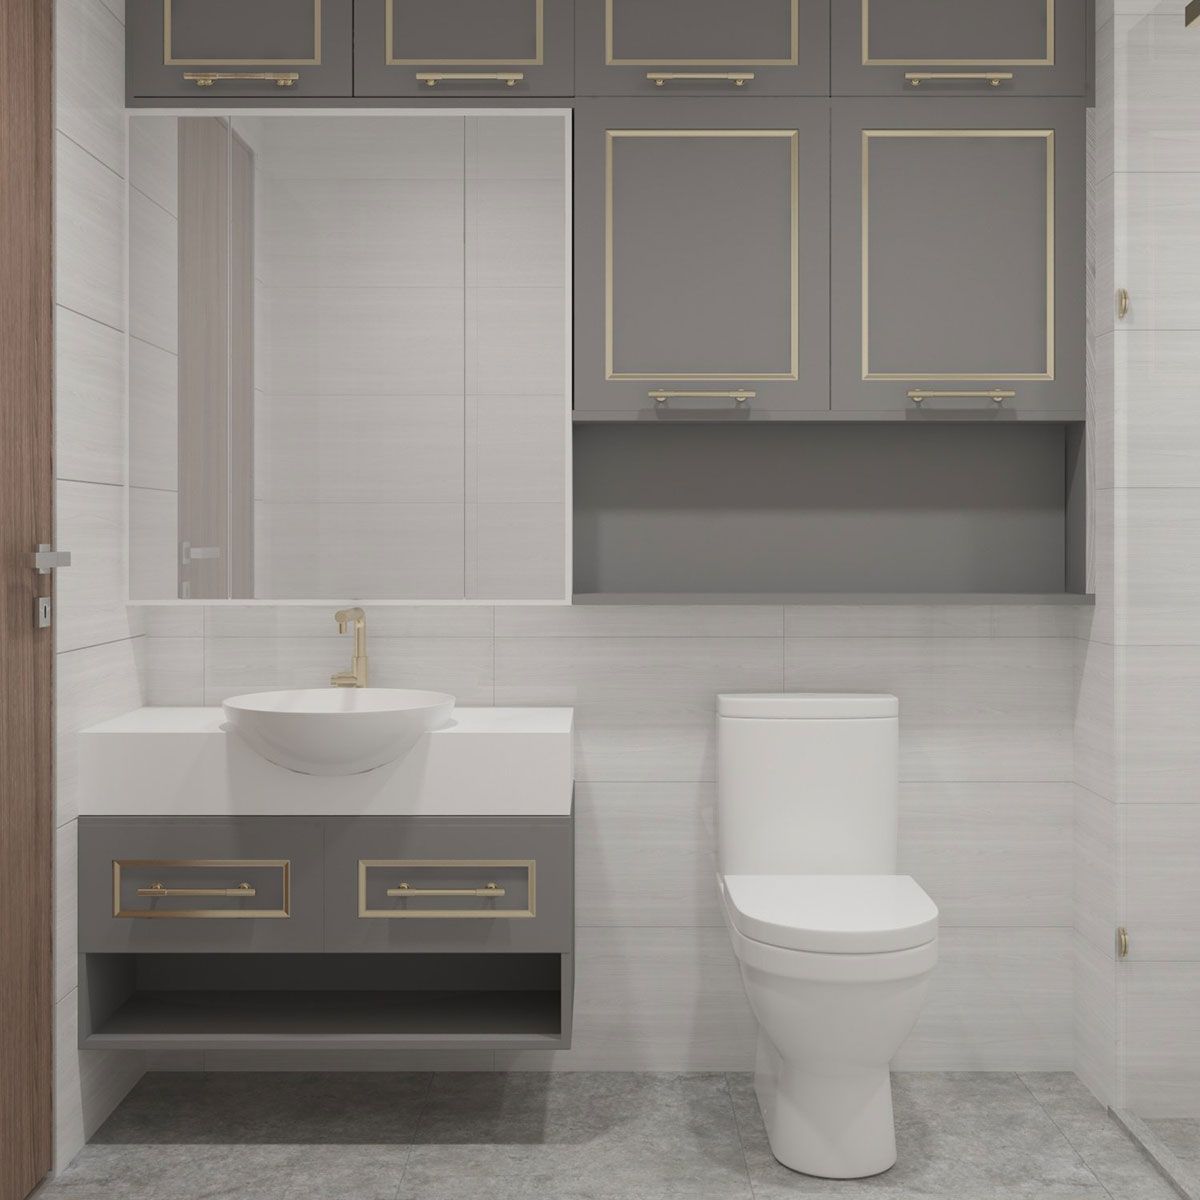 Nhà vệ sinh phong cách tân cổ điển, đồng bộ về thiết kế với toàn thể căn hộ